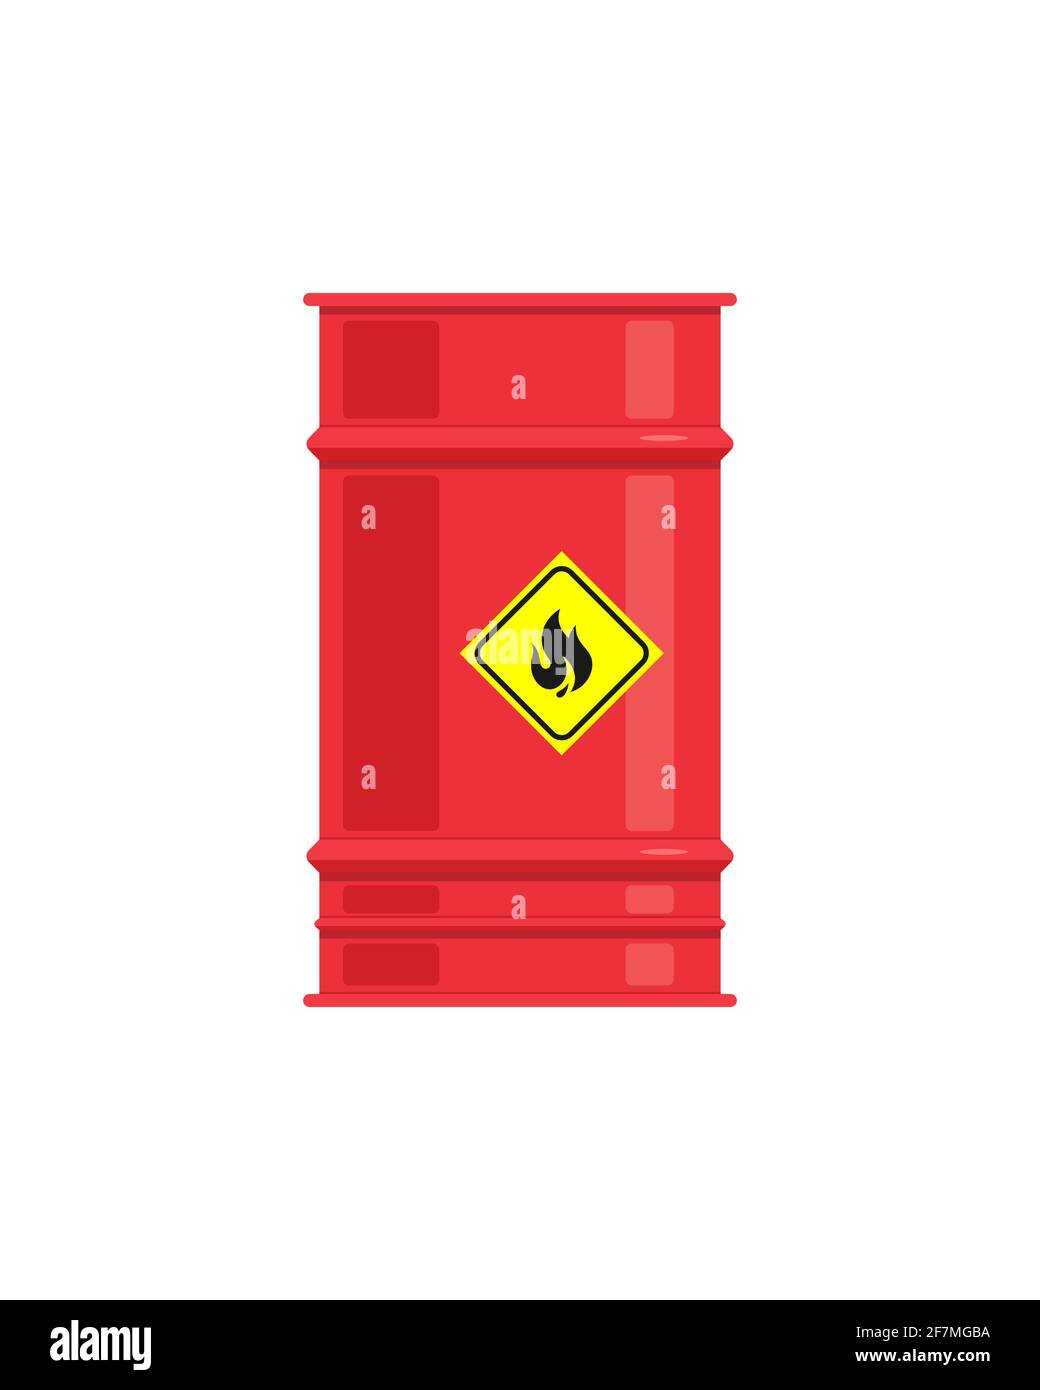 Das rote Sprengstofffass hat ein gelbes Warnschild mit einem Flammensymbol. Das Fass ist auf weißem Hintergrund isoliert. Vektorgrafik, EPS 10. Stock Vektor